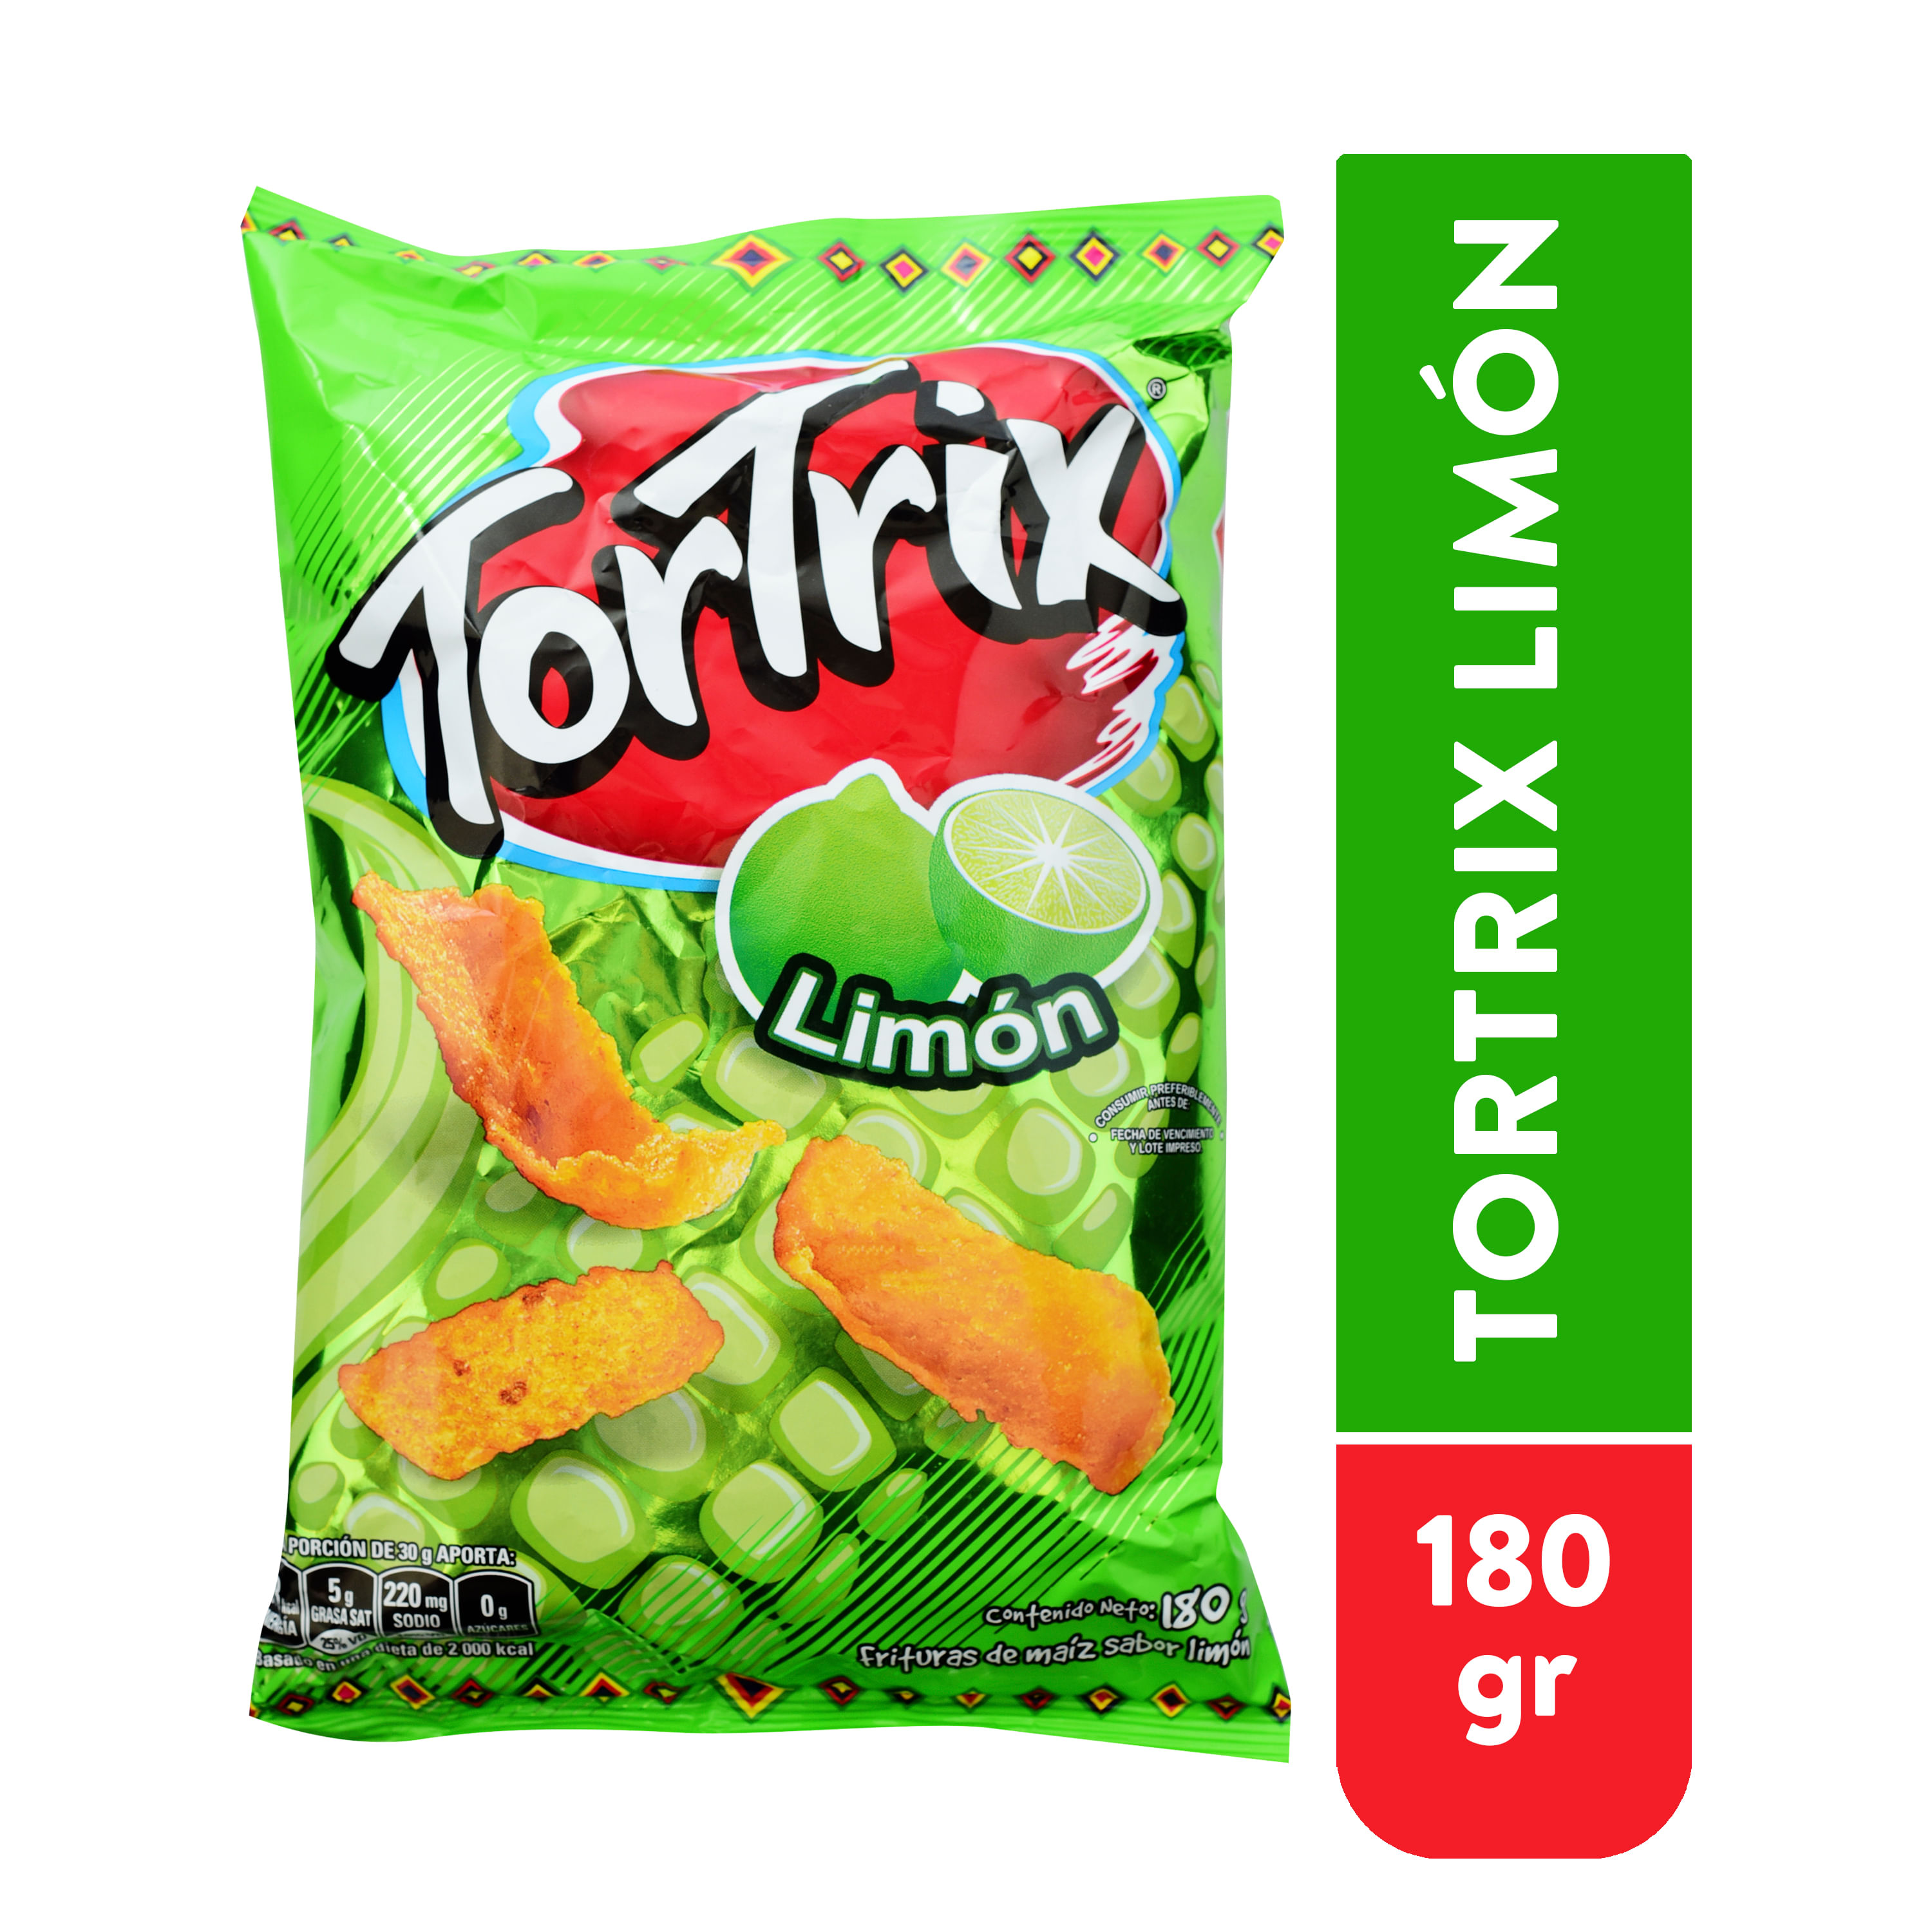 Snack-Tortrix-Maiz-Con-Lim-n-Paquete-180gr-1-27903